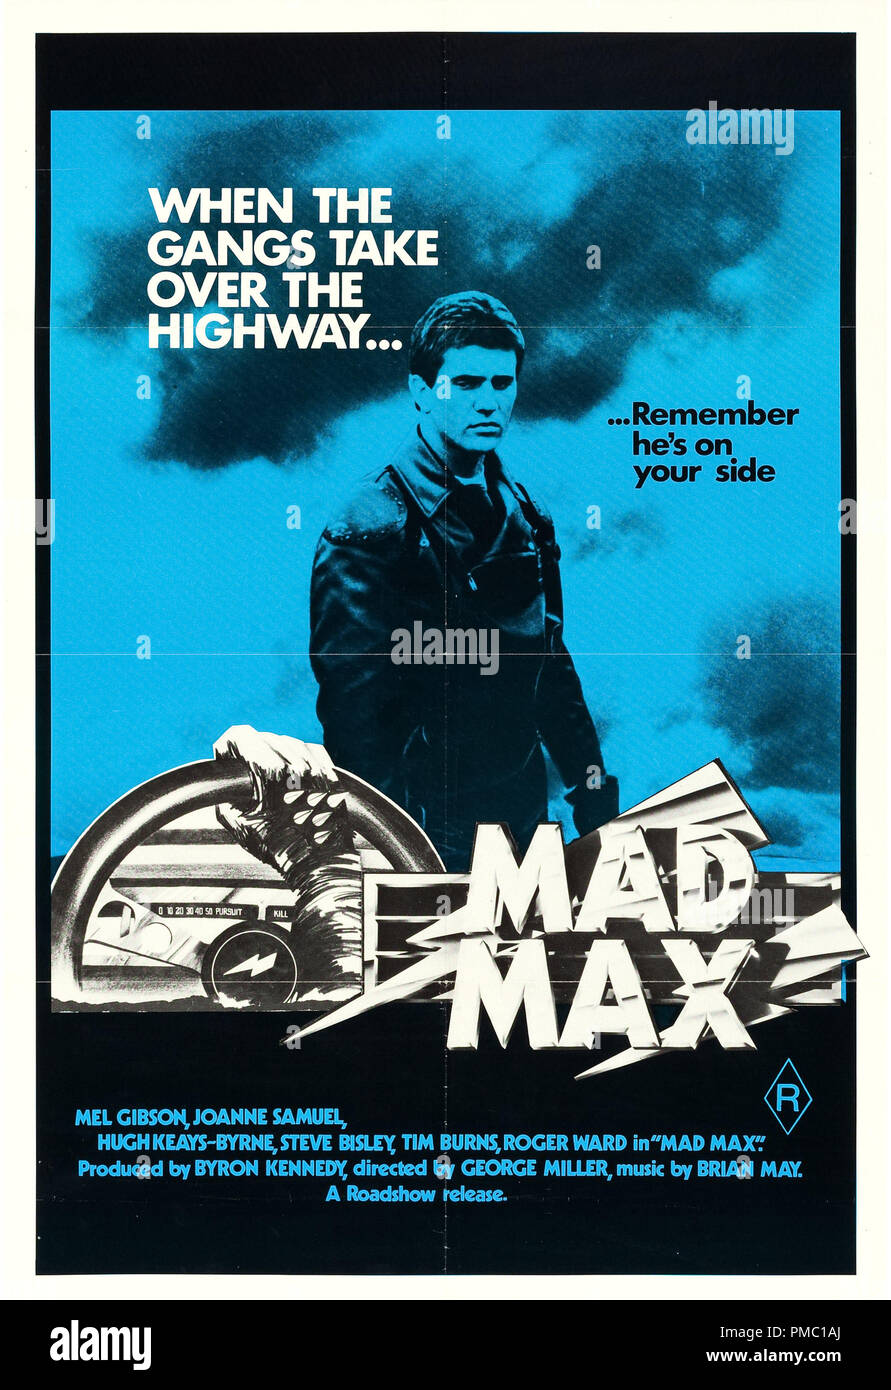 Mel Gibson, Mad Max (Roadshow, 1980). Australische One Sheet Poster Datei Referenz # 33595 308 THA Stockfoto